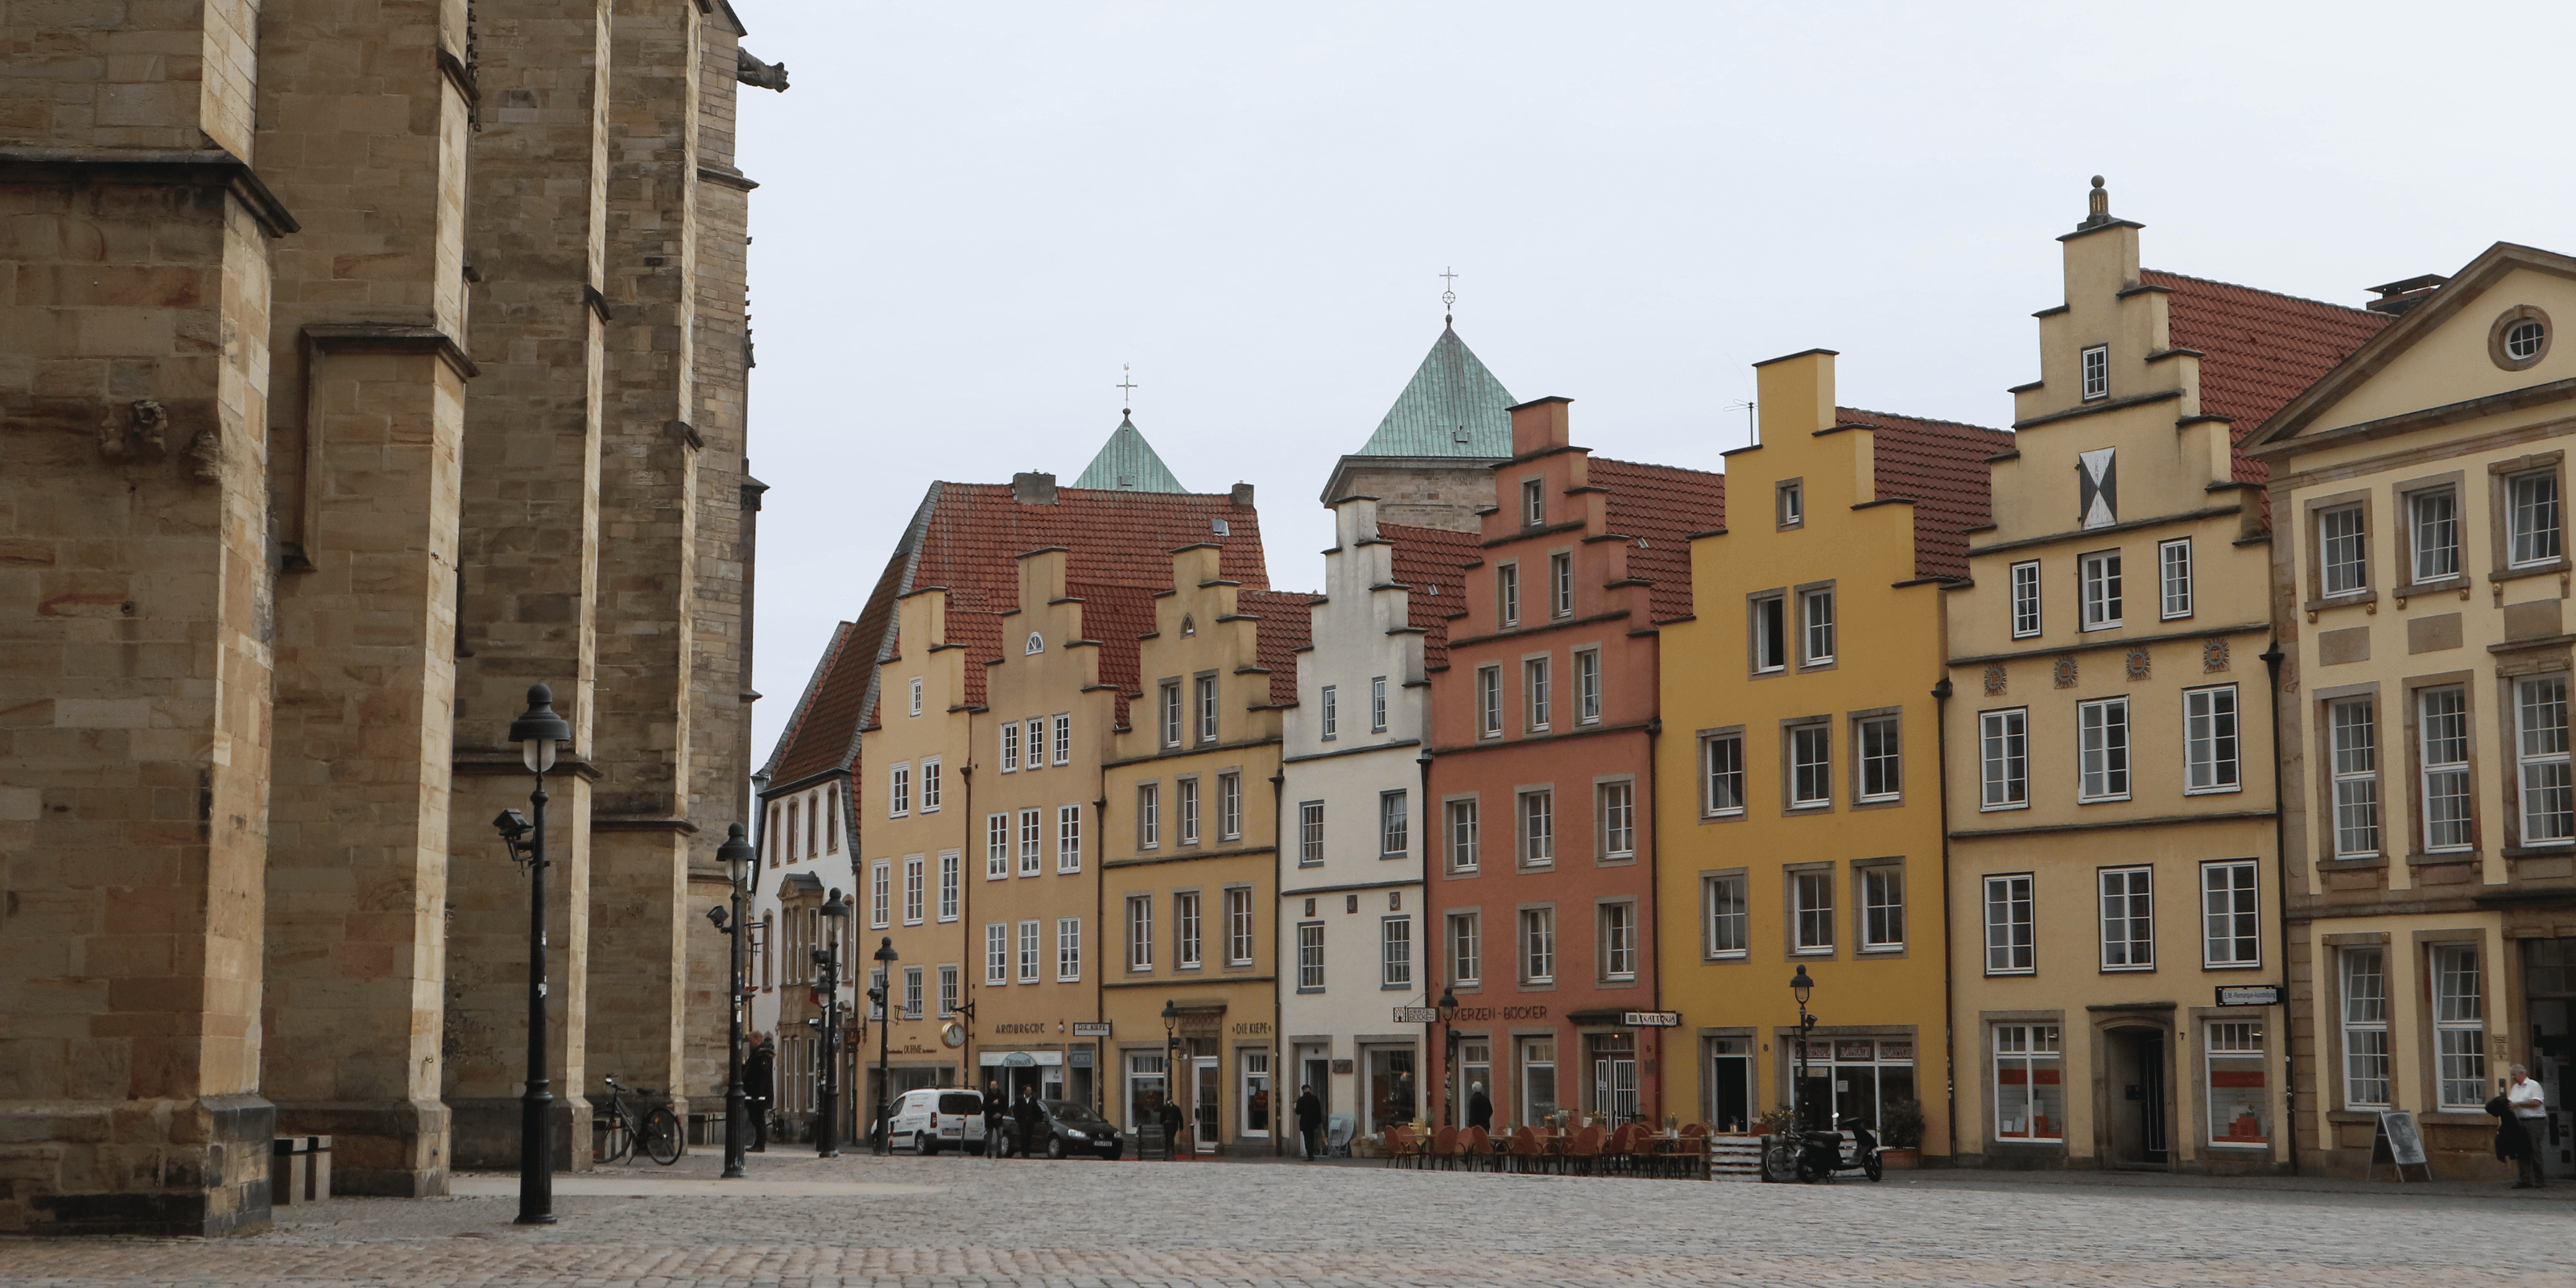 Innenstadt von Osnabrück mit Kirche und Häusern